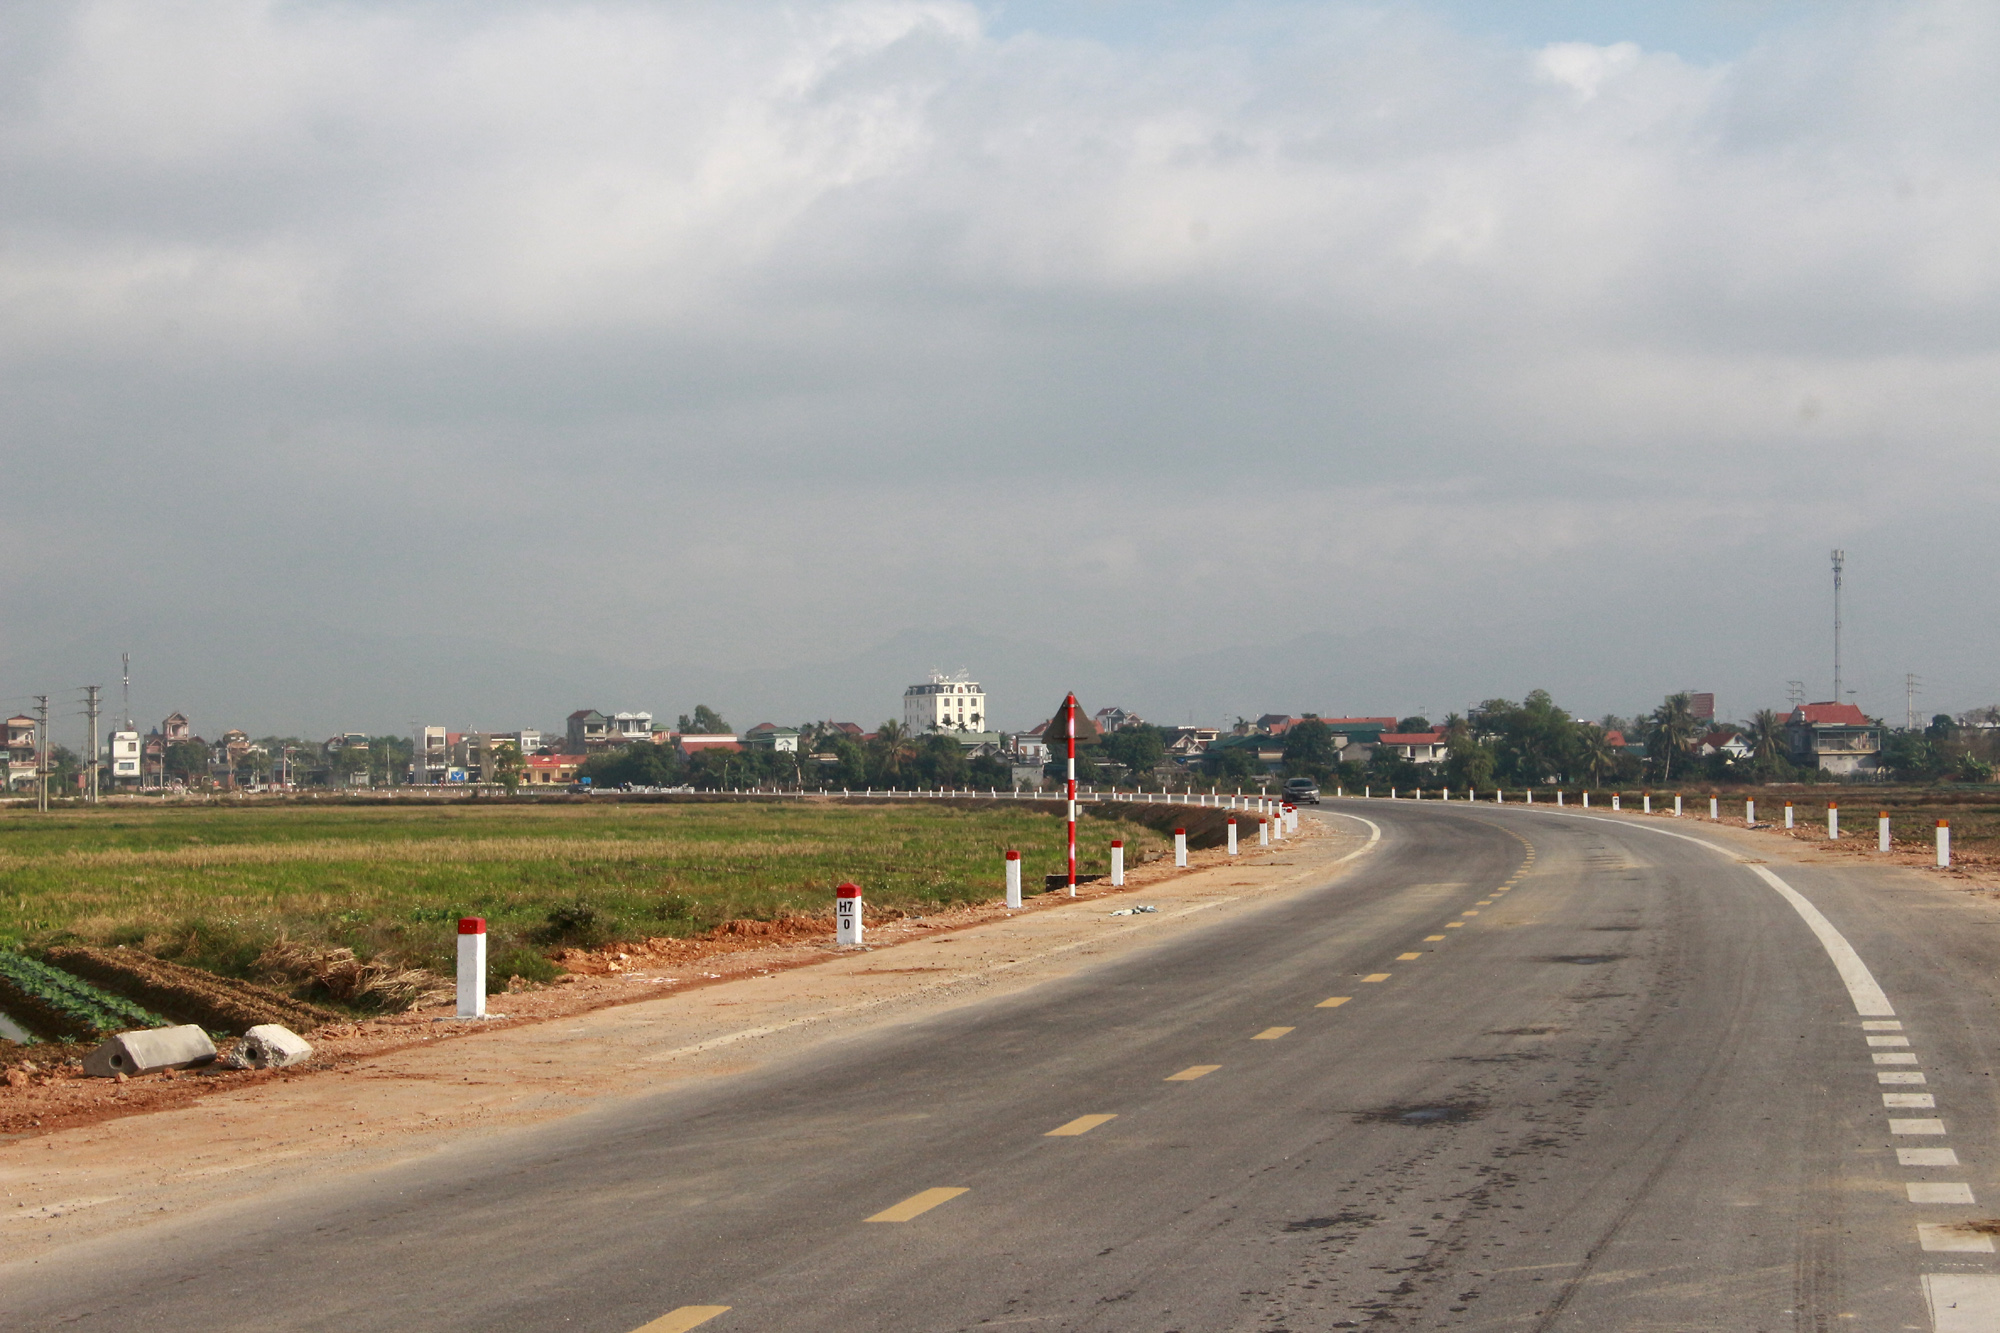 Đường dẫn nối QL 18 lên cầu Triều có chiều dài trên 2,2km đã được hoàn thiện, sẵn sàng cho thông xe kỹ thuật. Ảnh: Mạnh Trường